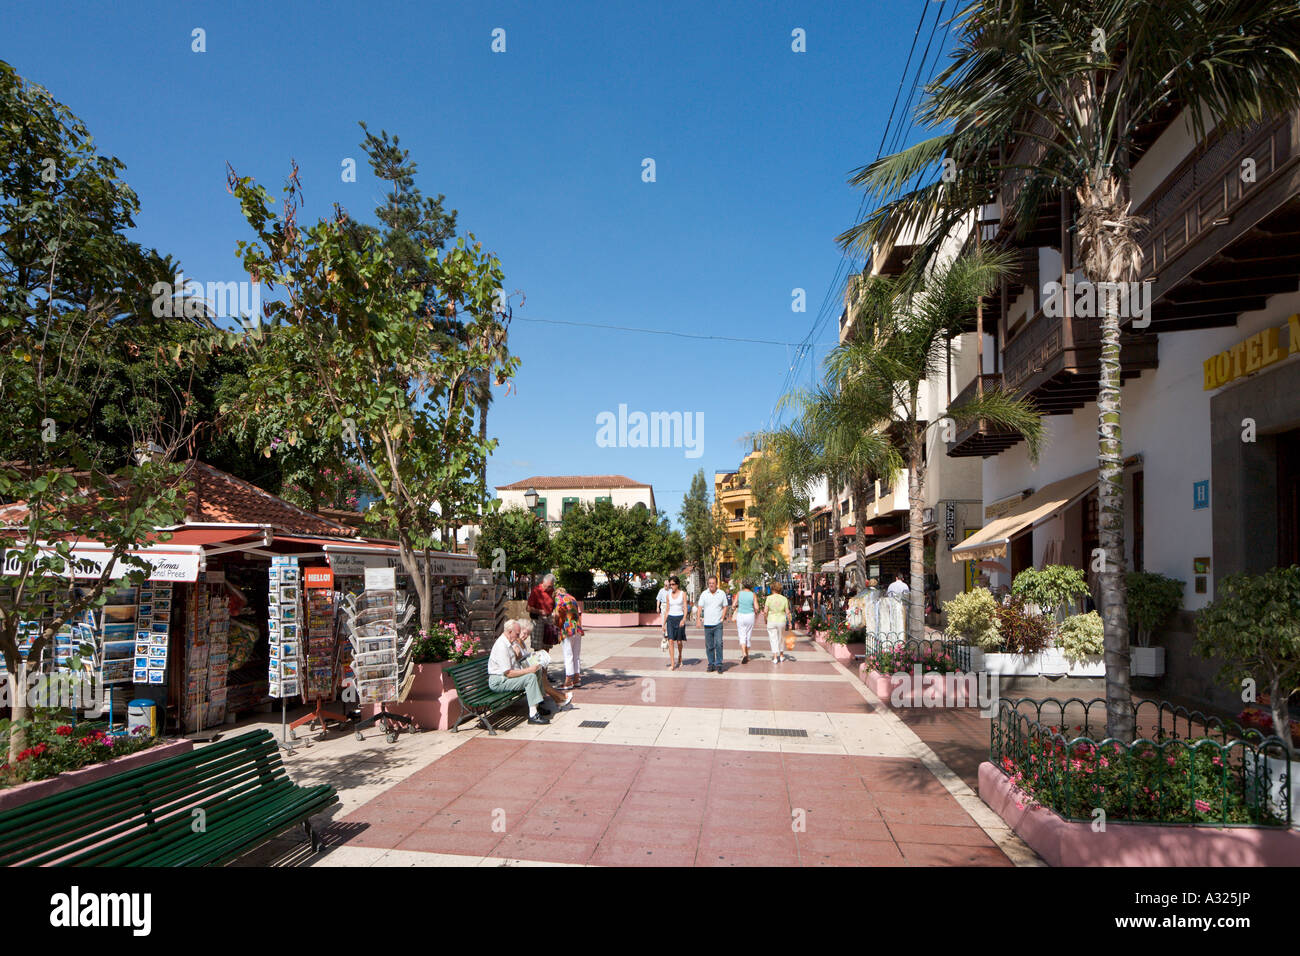 Las tiendas y la zona peatonal en el centro de la ciudad, Puerto de la Cruz,  Tenerife, Islas Canarias, España Fotografía de stock - Alamy